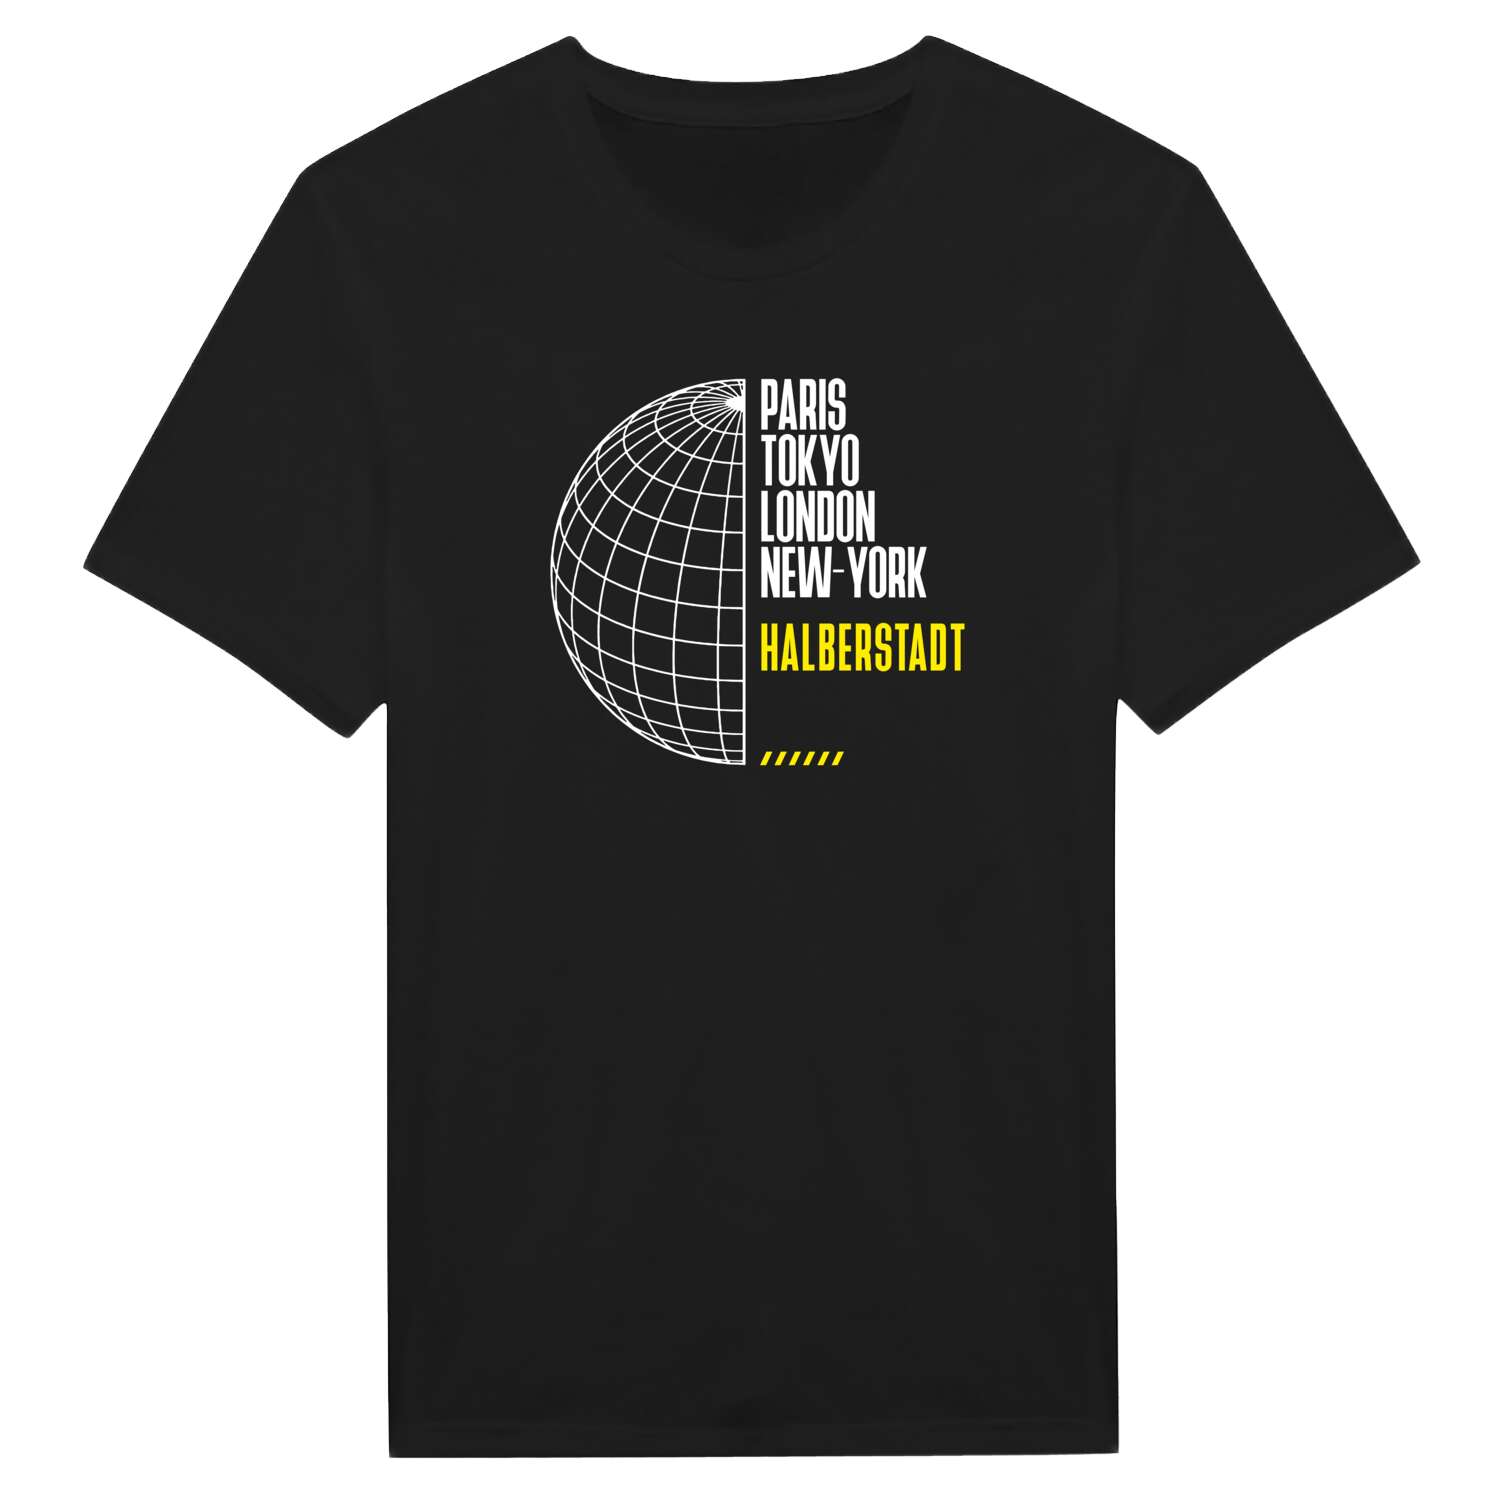 Halberstadt T-Shirt »Paris Tokyo London«